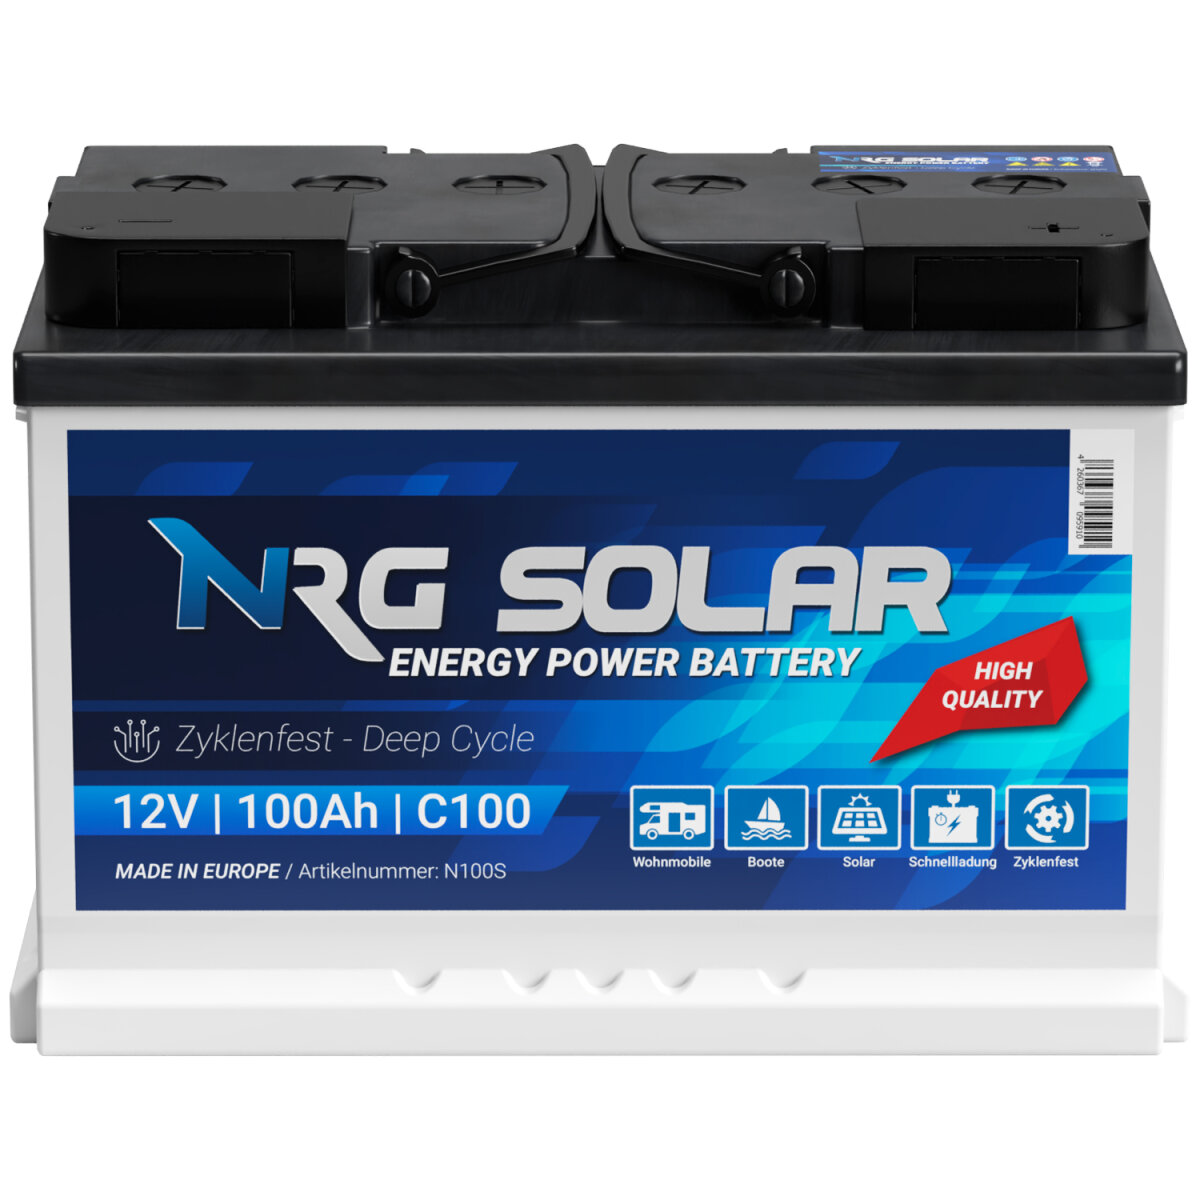 NRG Solarbatterie 100Ah 12V, 95,71 €